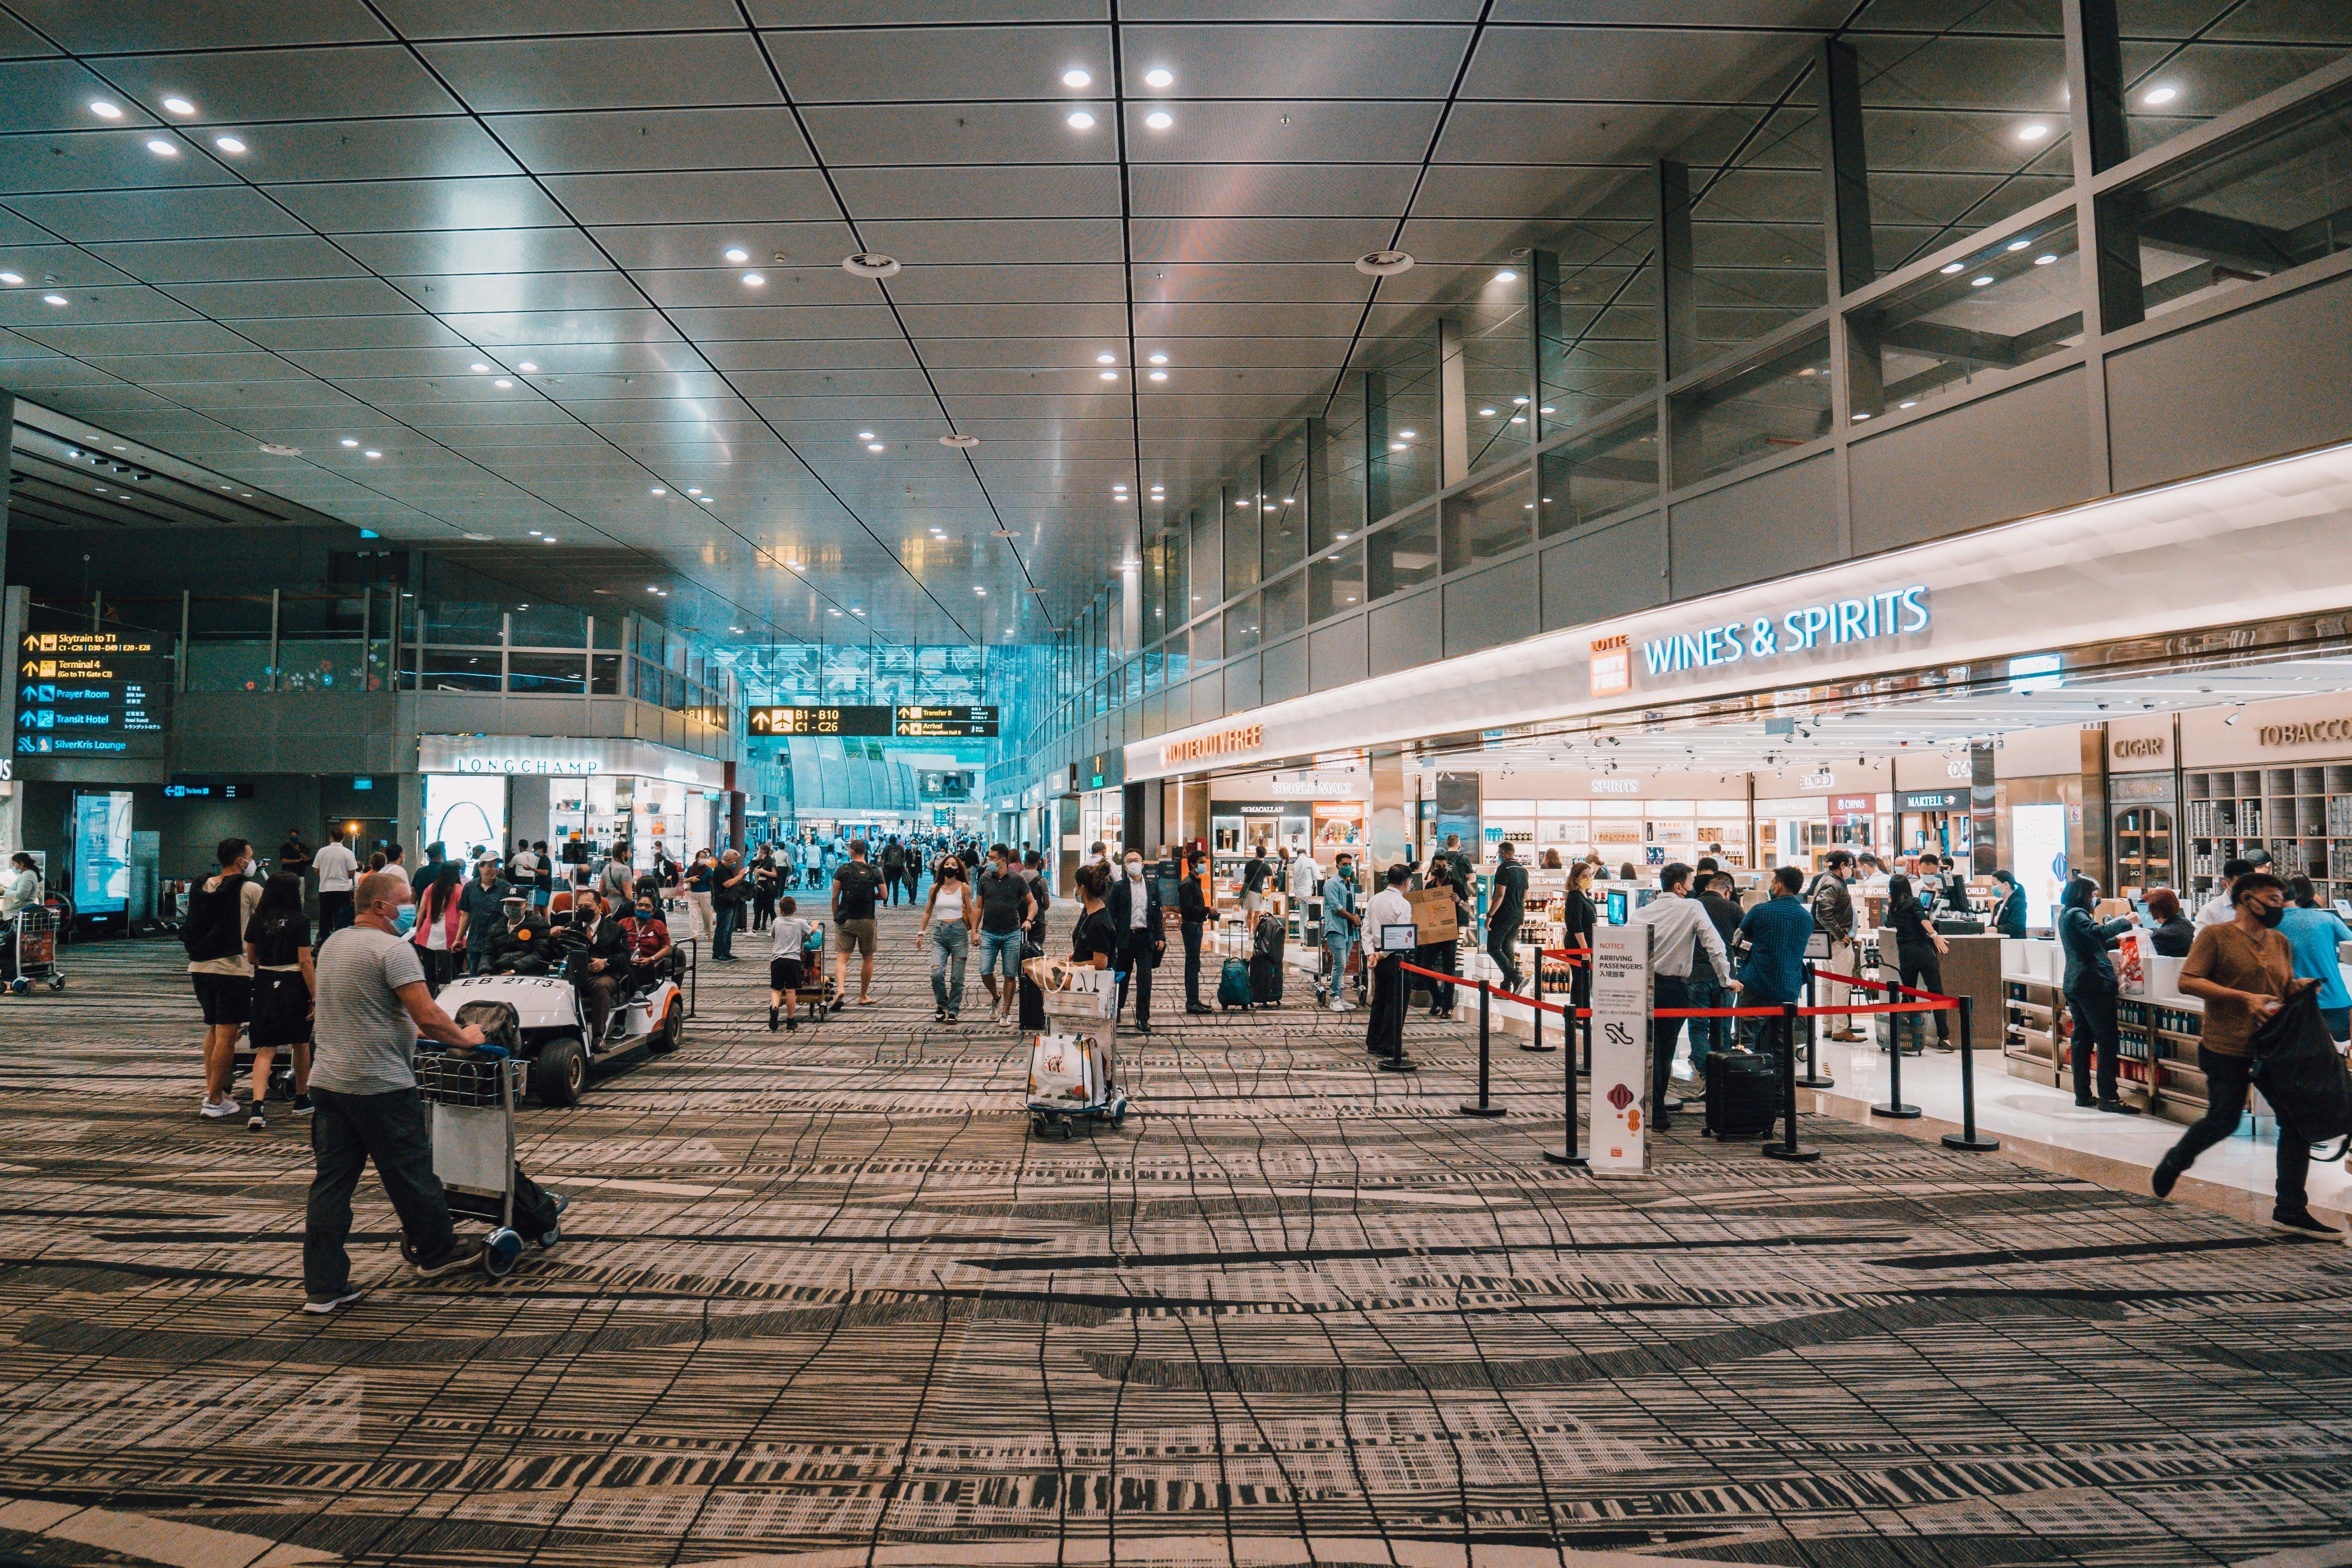 Singapore Changi Airport